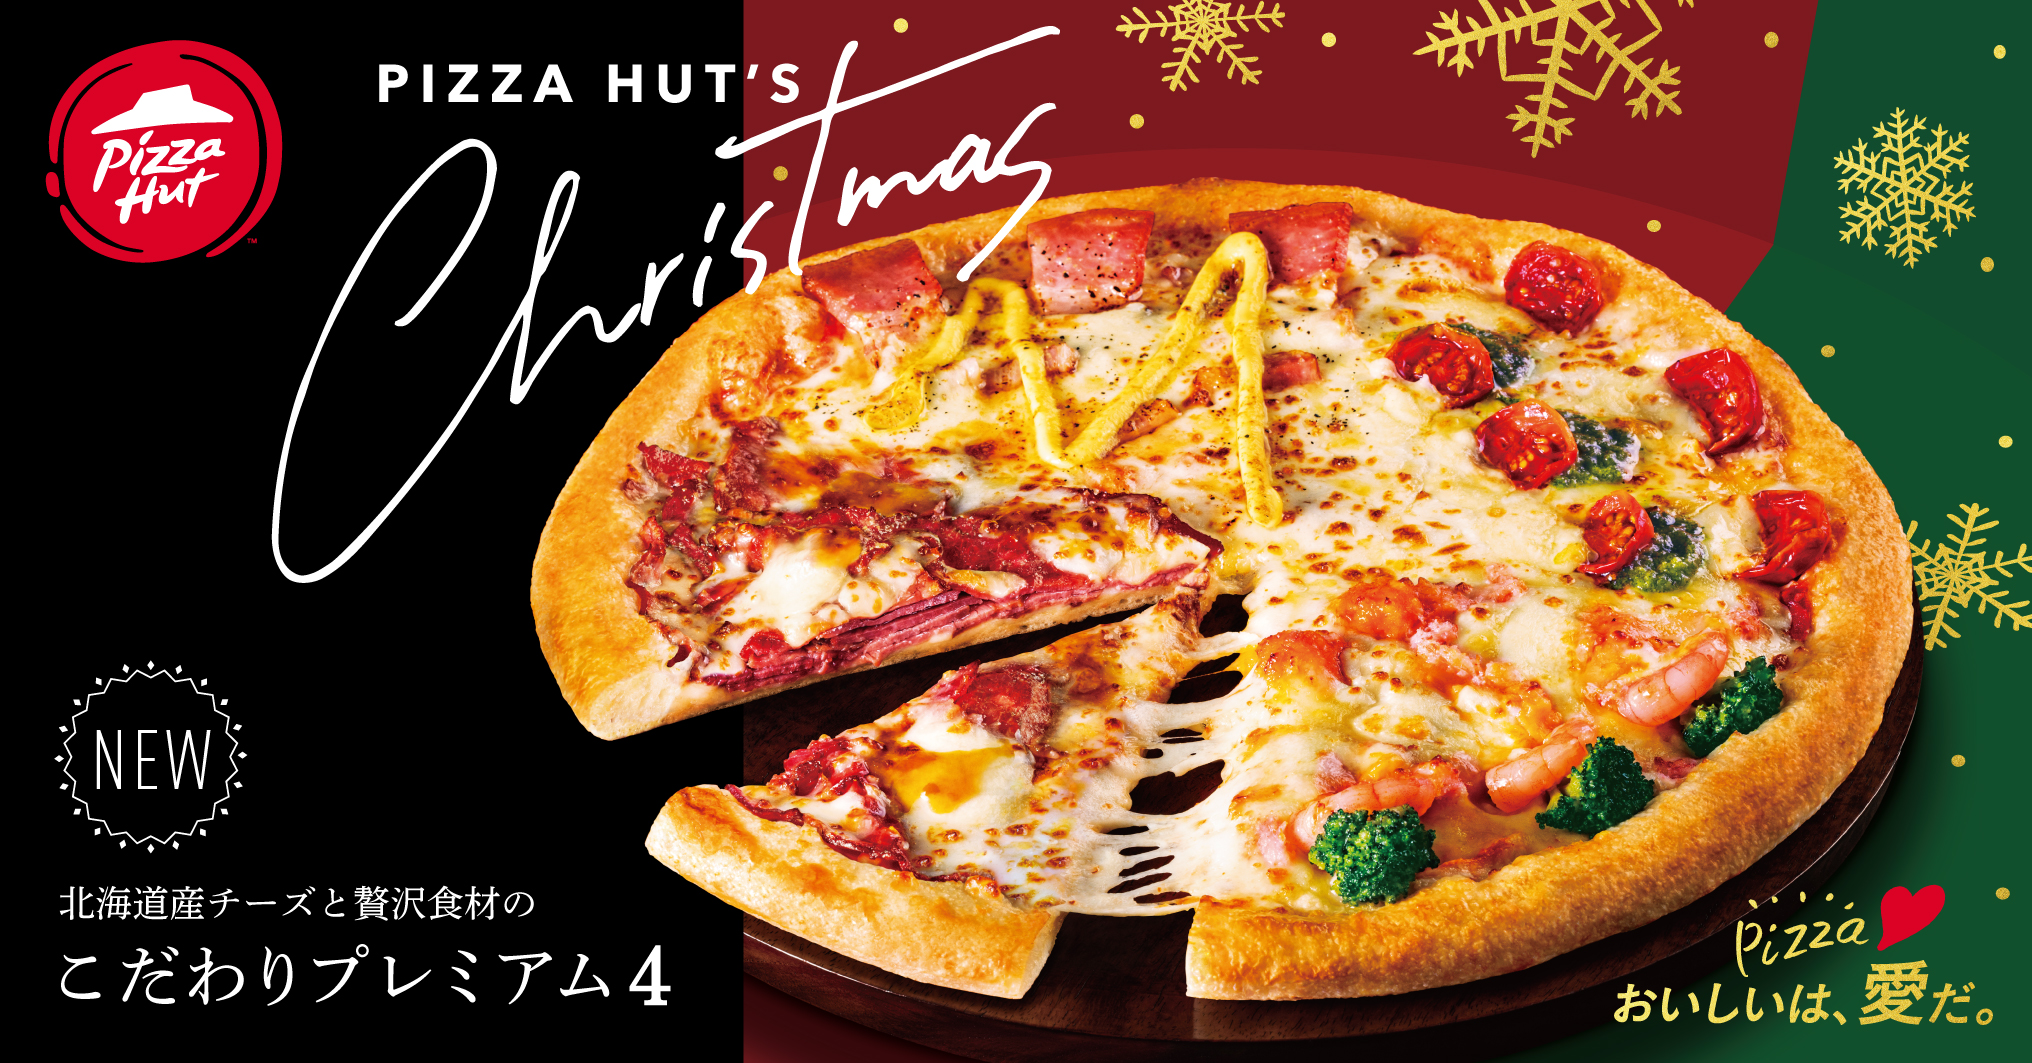 ピザハットが長年の研究開発の末 ついに商品化 ローストビーフをミルフィーユ仕立てにトッピングした渾身の贅沢ピザ こだわりプレミアム4 新発売 日本 ピザハット株式会社のプレスリリース